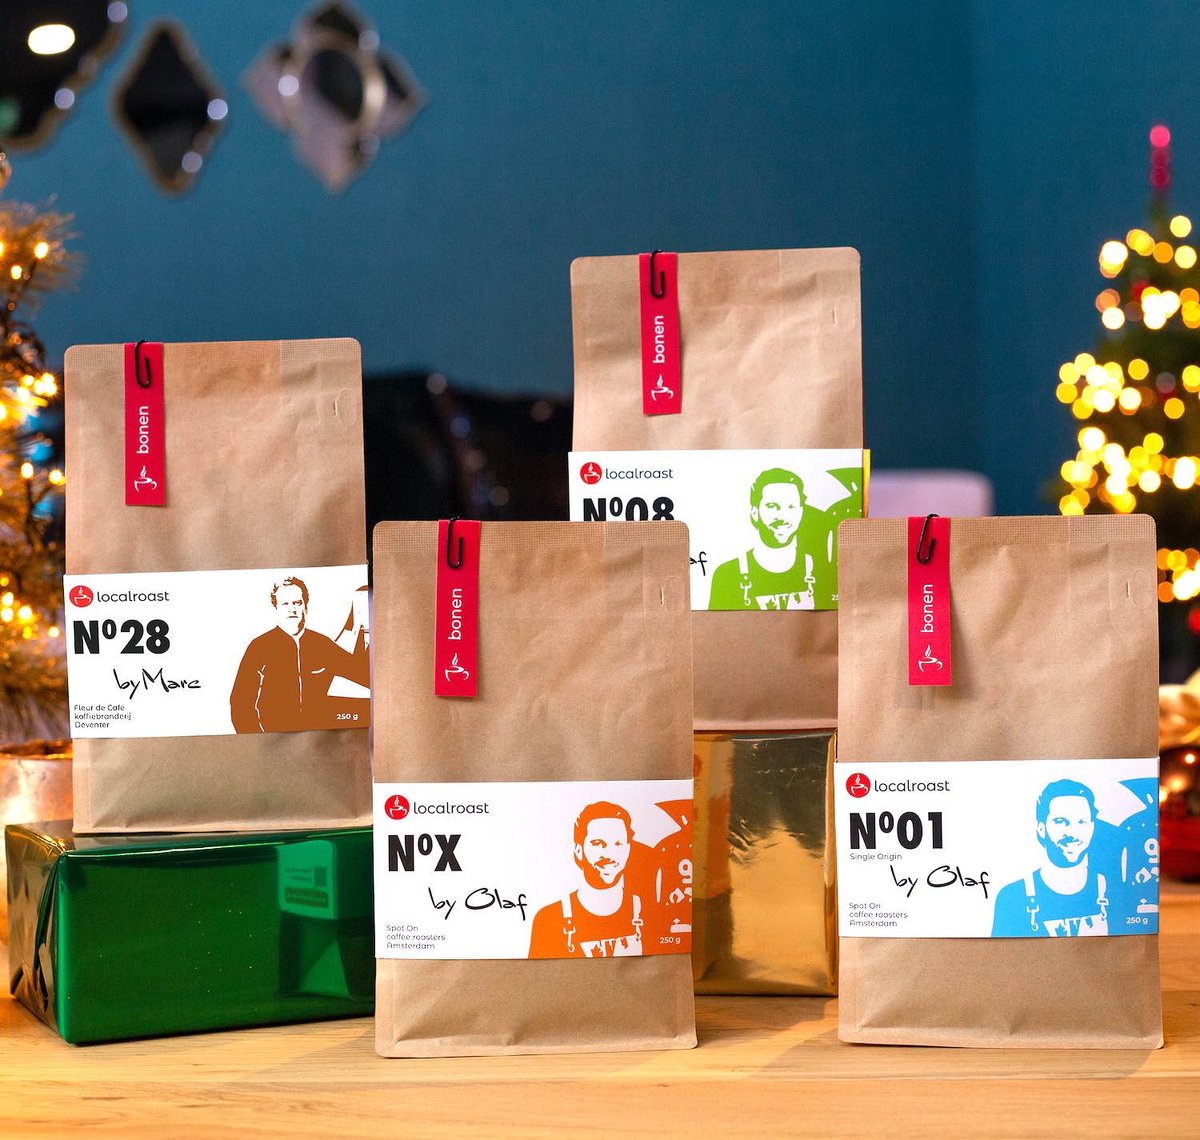 Localroast koffie proefpakket kerst cadeau met 4 x 250g vers gebrande koffies | Bonen | met kerstkaart | koffie cadeaupakket | koffie cadeau | voor koffieliefhebber